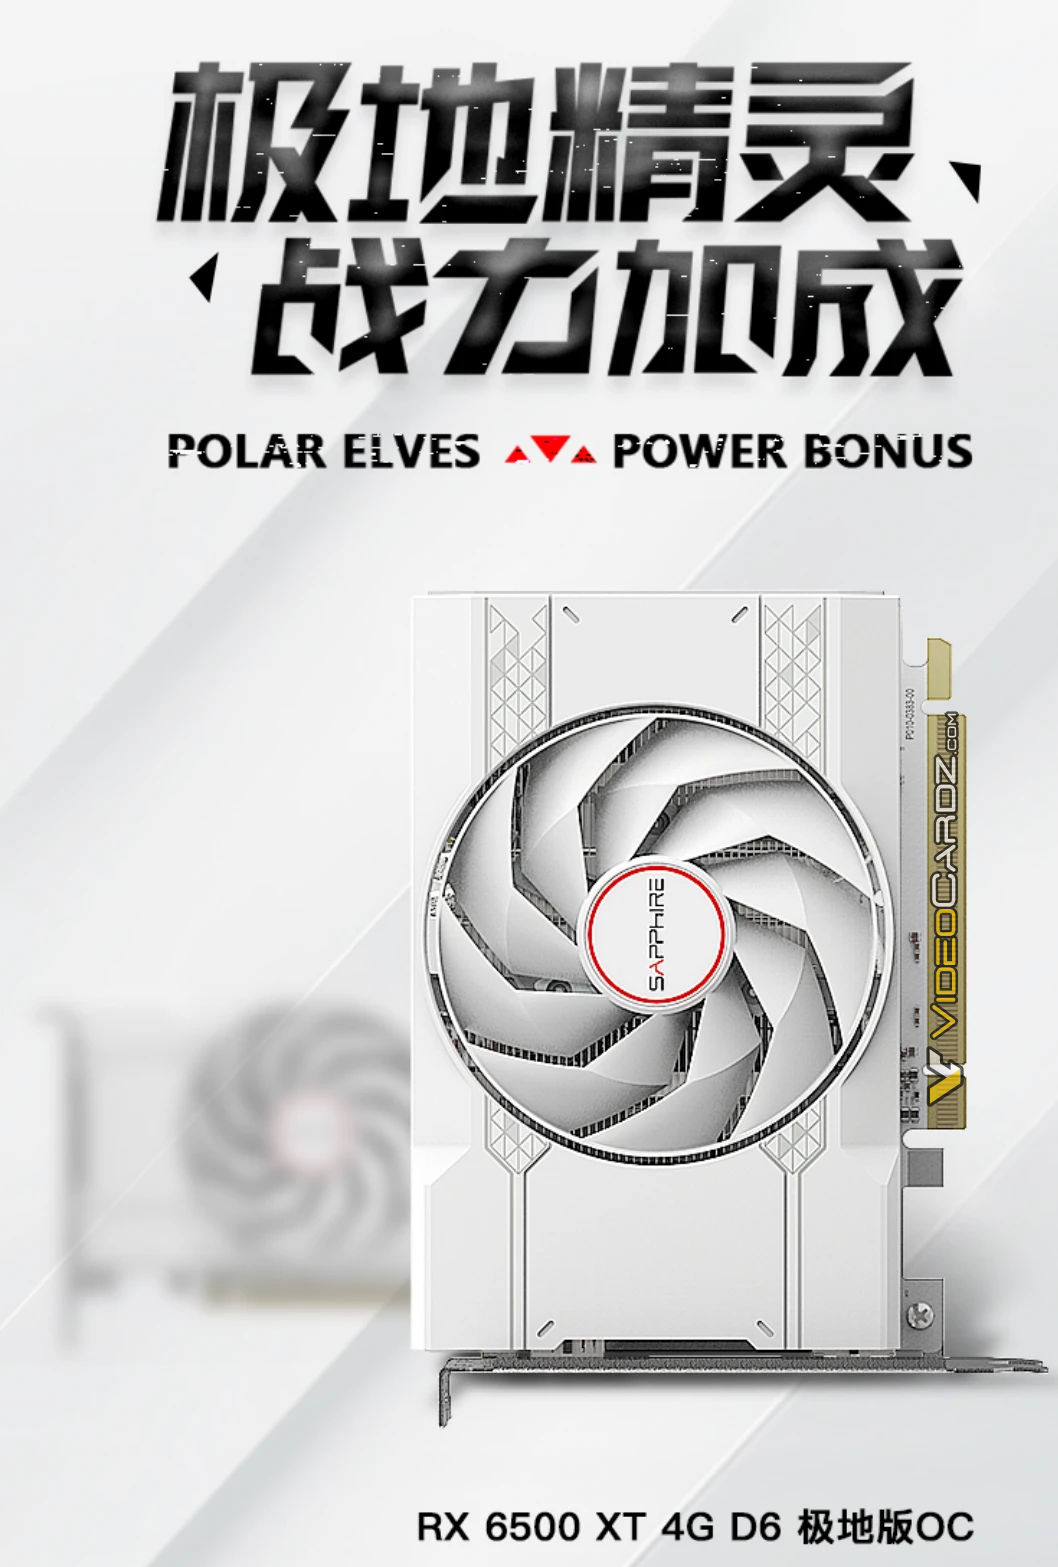 Immagine pubblicata in relazione al seguente contenuto: Sapphire realizza una Radeon RX 6500 XT Polar Elves completamente bianca | Nome immagine: news34638_Sapphire_Radeon-RX-6500-XT-Polar-Elves_2.jpg